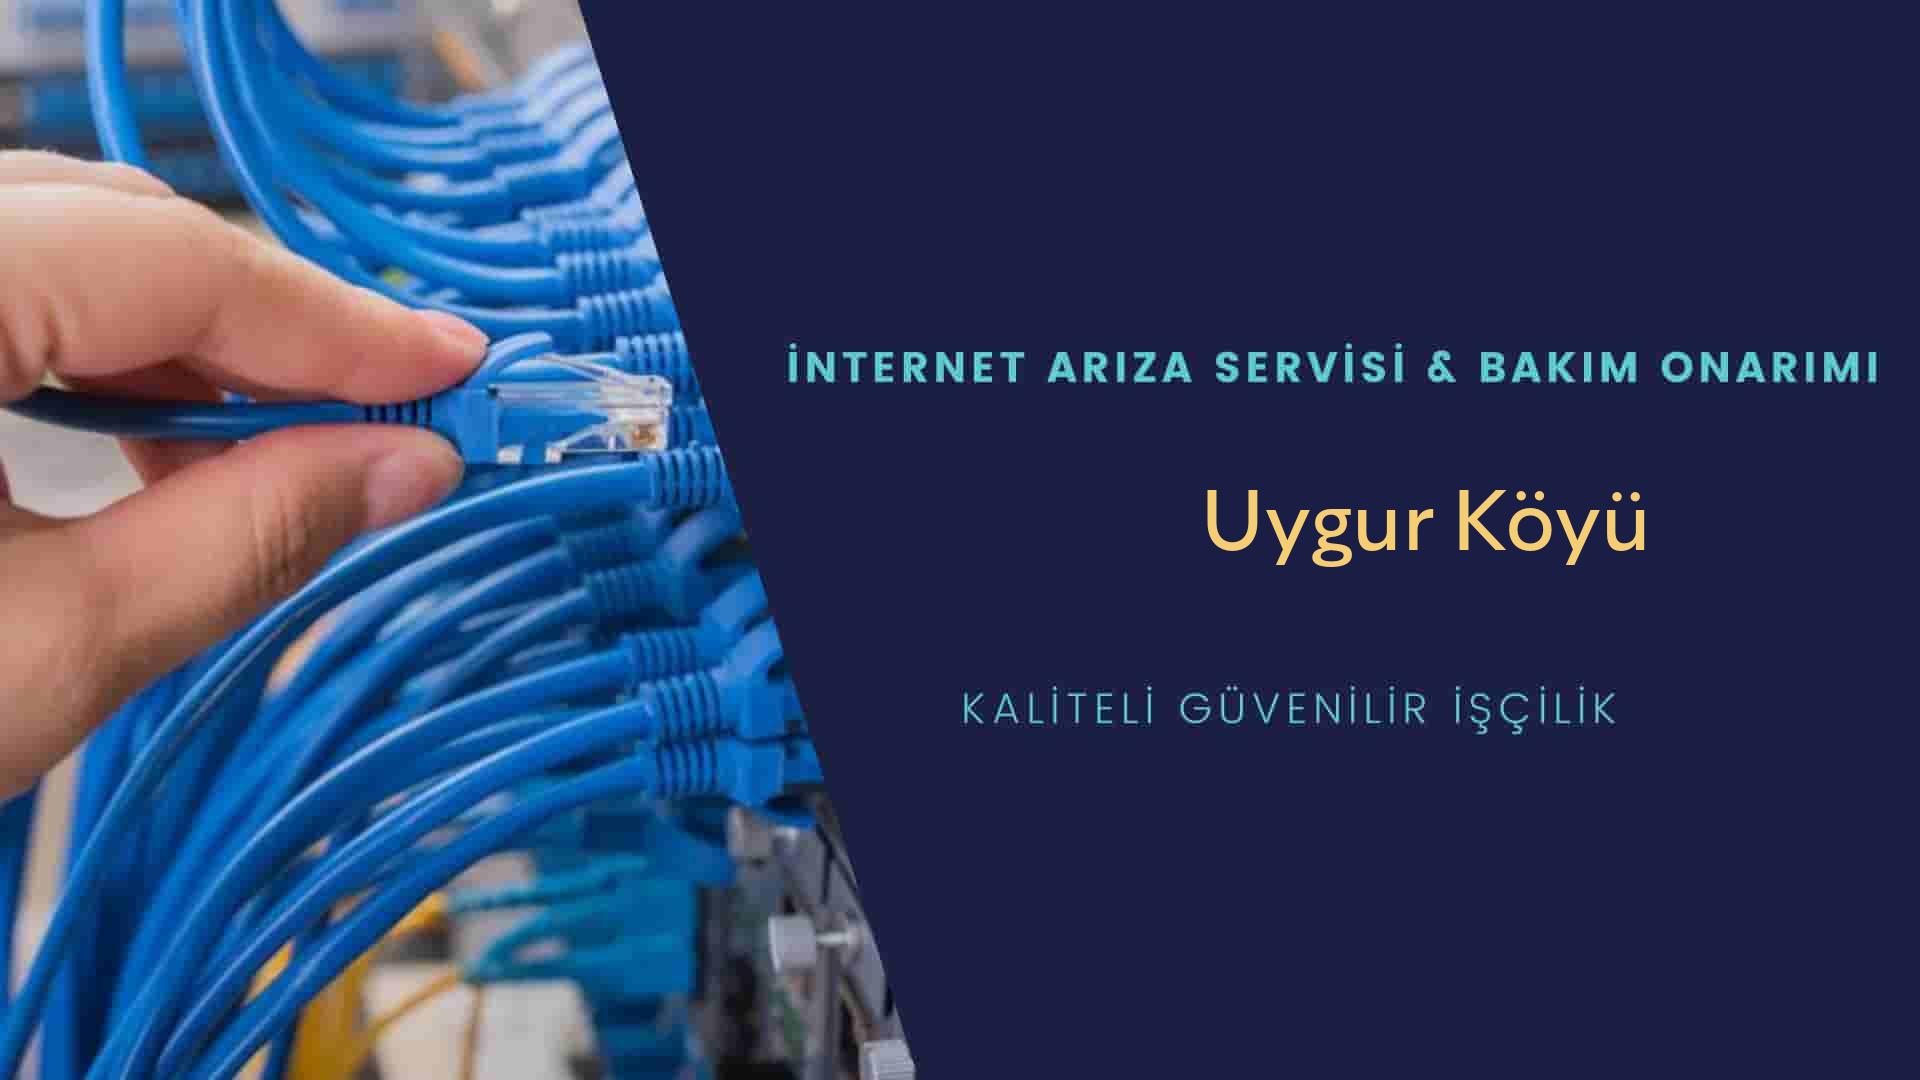 Uygur Köyü internet kablosu çekimi yapan yerler veya elektrikçiler mi? arıyorsunuz doğru yerdesiniz o zaman sizlere 7/24 yardımcı olacak profesyonel ustalarımız bir telefon kadar yakındır size.